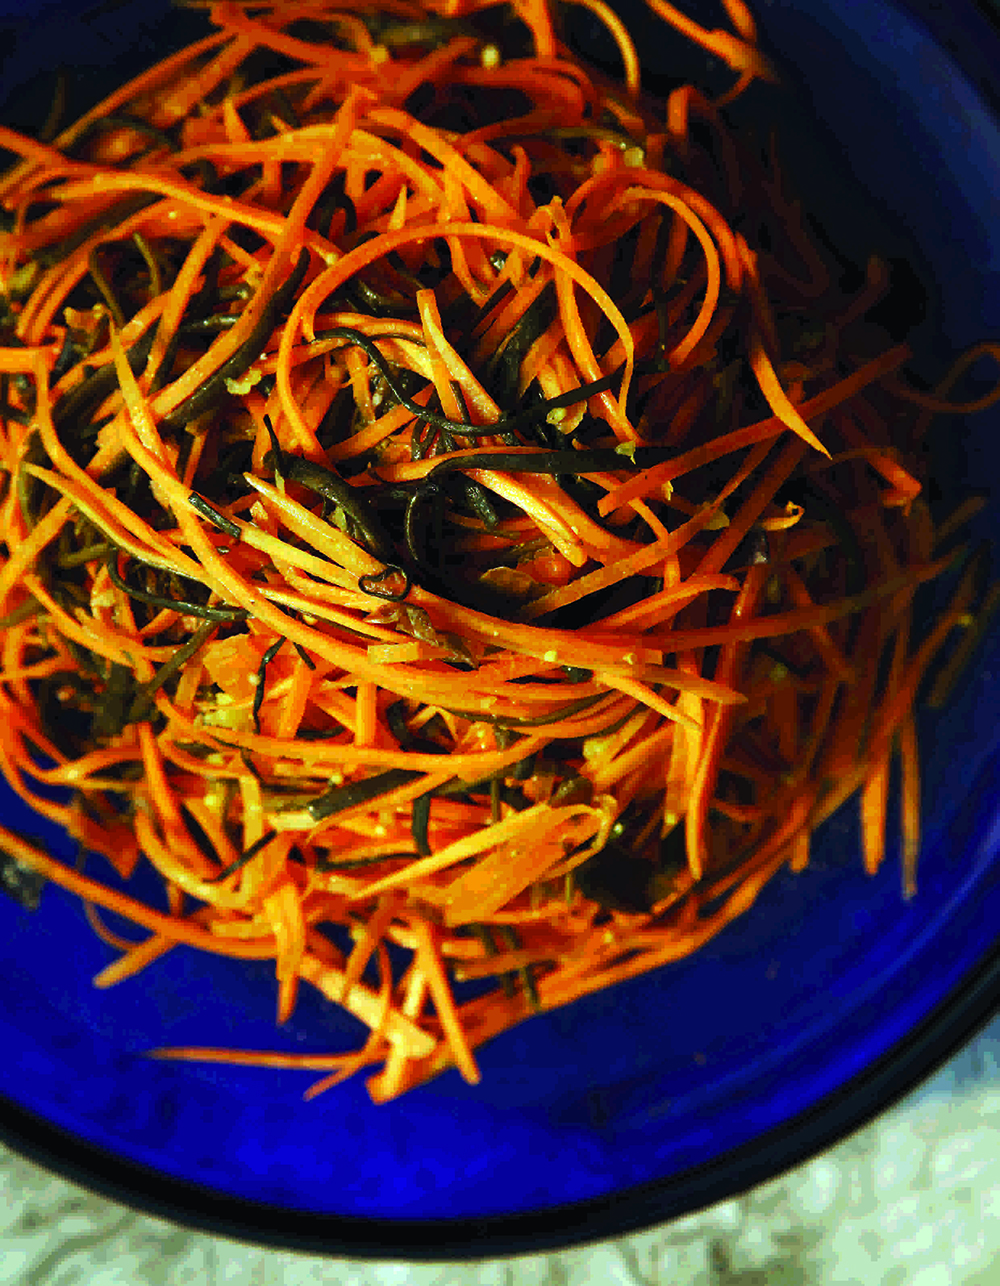 Carrot sea spaghetti salad